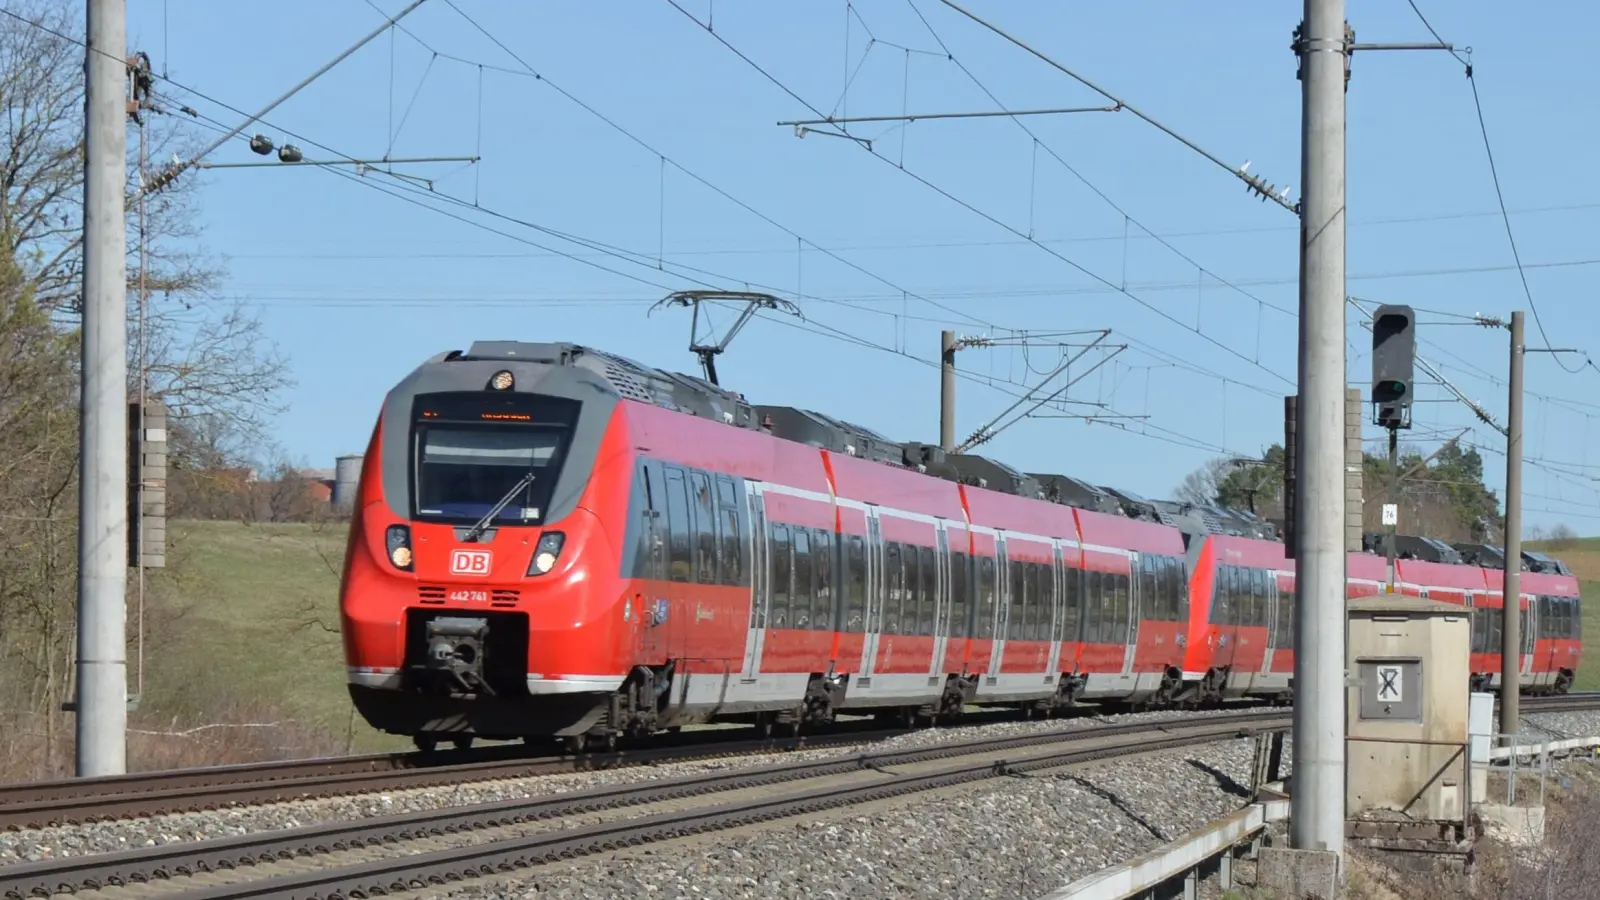 Auf der Linie zwischen Nürnberg und Ansbach/Dombühl kommt es derzeit zu Verspätungen und Zugausfällen. (Archivbild: Johannes Hirschlach)